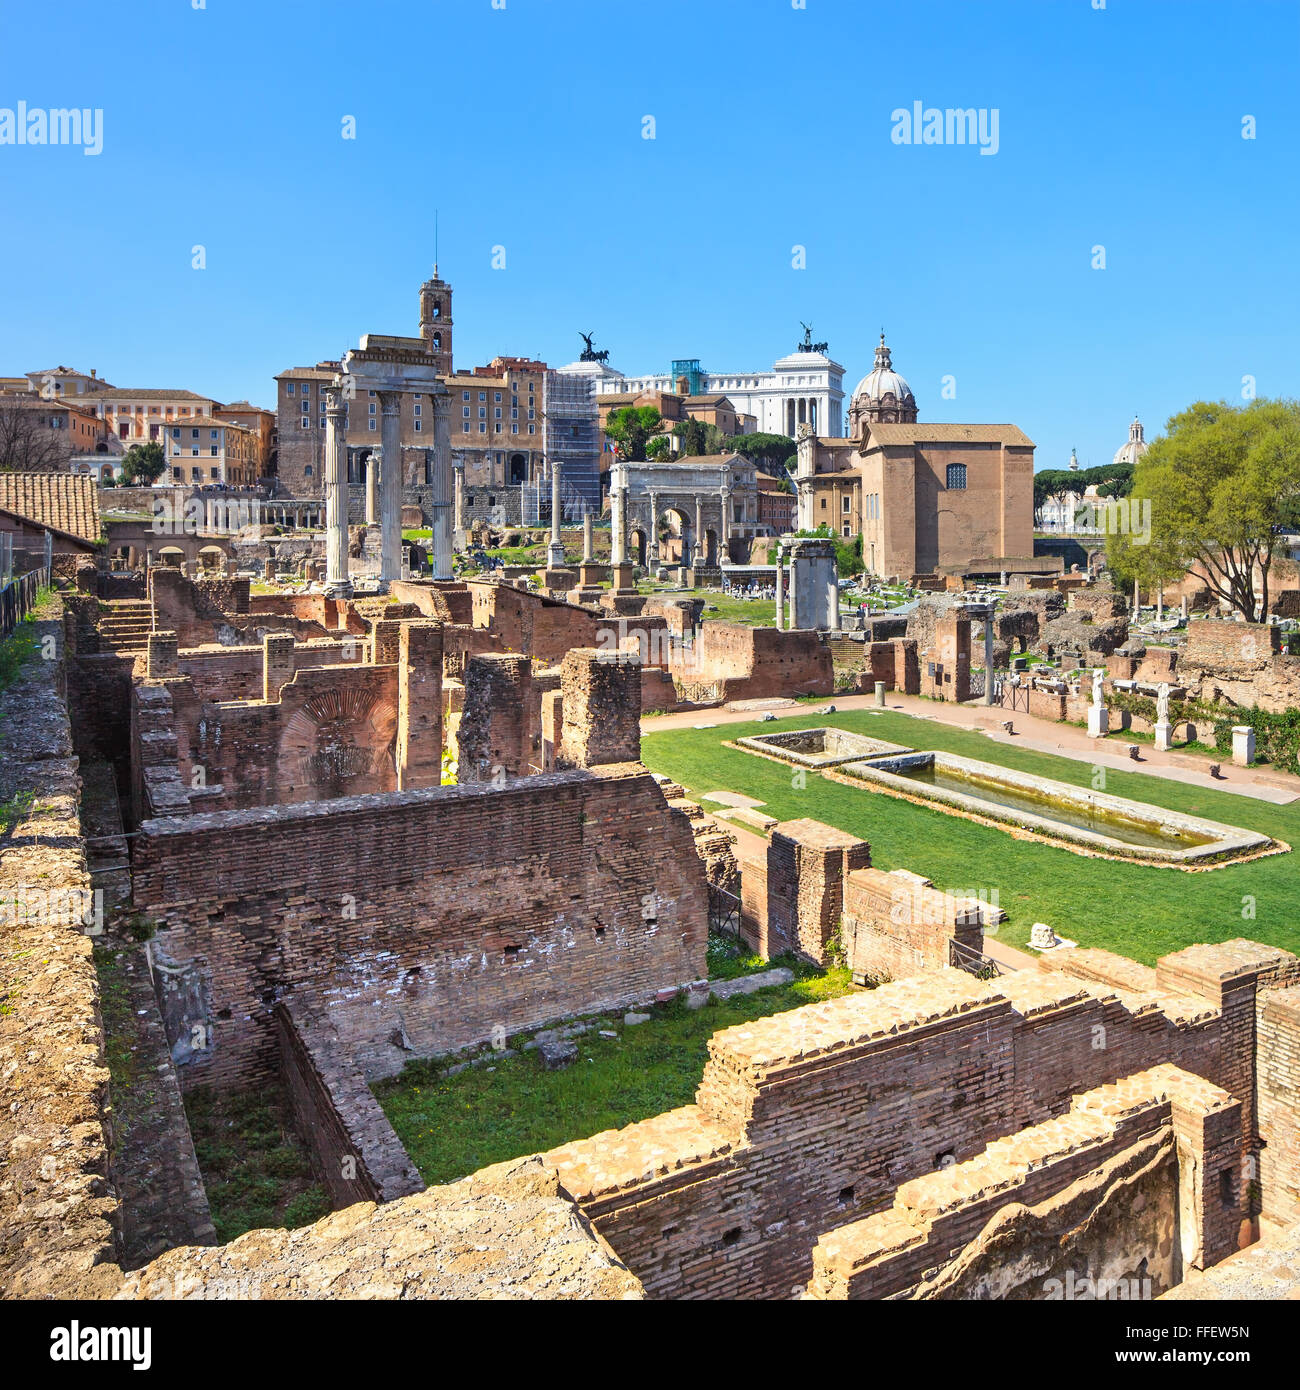 Ancien forum romain ruines vue panoramique. Site du patrimoine de l'Unesco. Rome, Italie, Europe. Banque D'Images